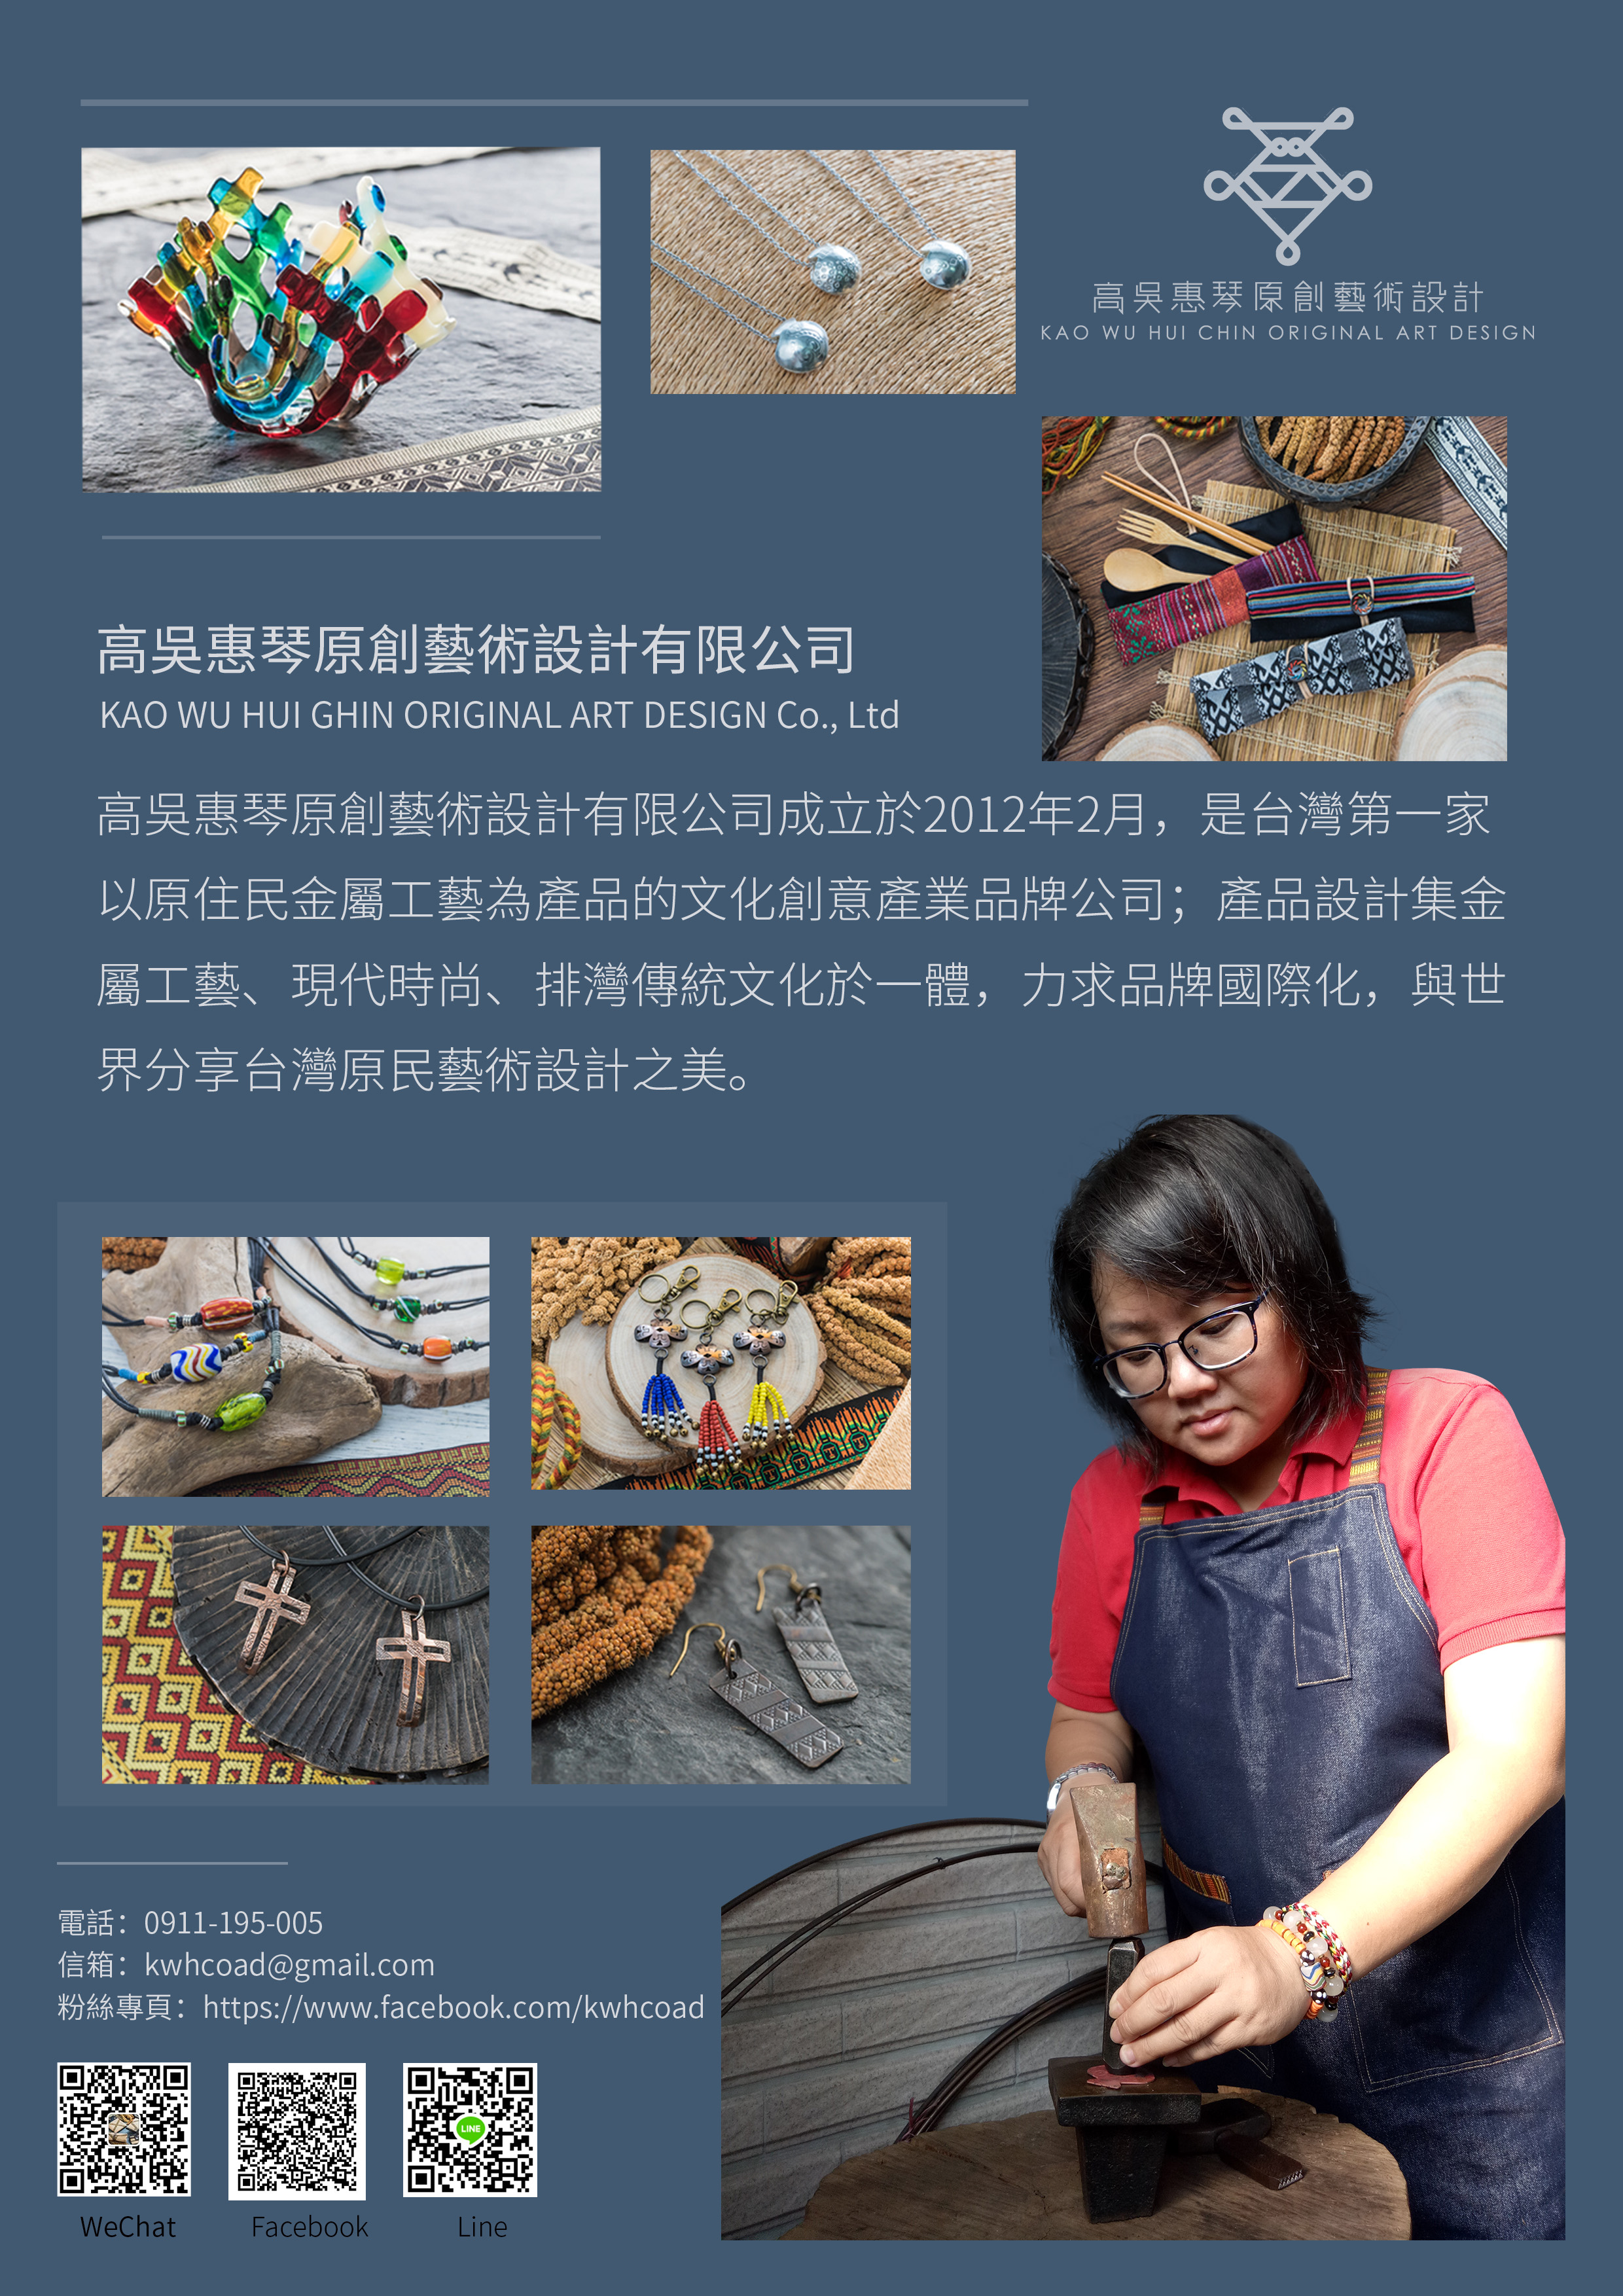 高吳惠琴原創藝術設計有限公司成立於2012年2月，是台灣 第一家以原住民金屬工藝為產品的文化創意產業品牌公司； 產品設計金屬工藝、現代時尚、排灣傳統文化於一體，力求 品牌國際化，與世界分享台灣原民藝術設計之美。